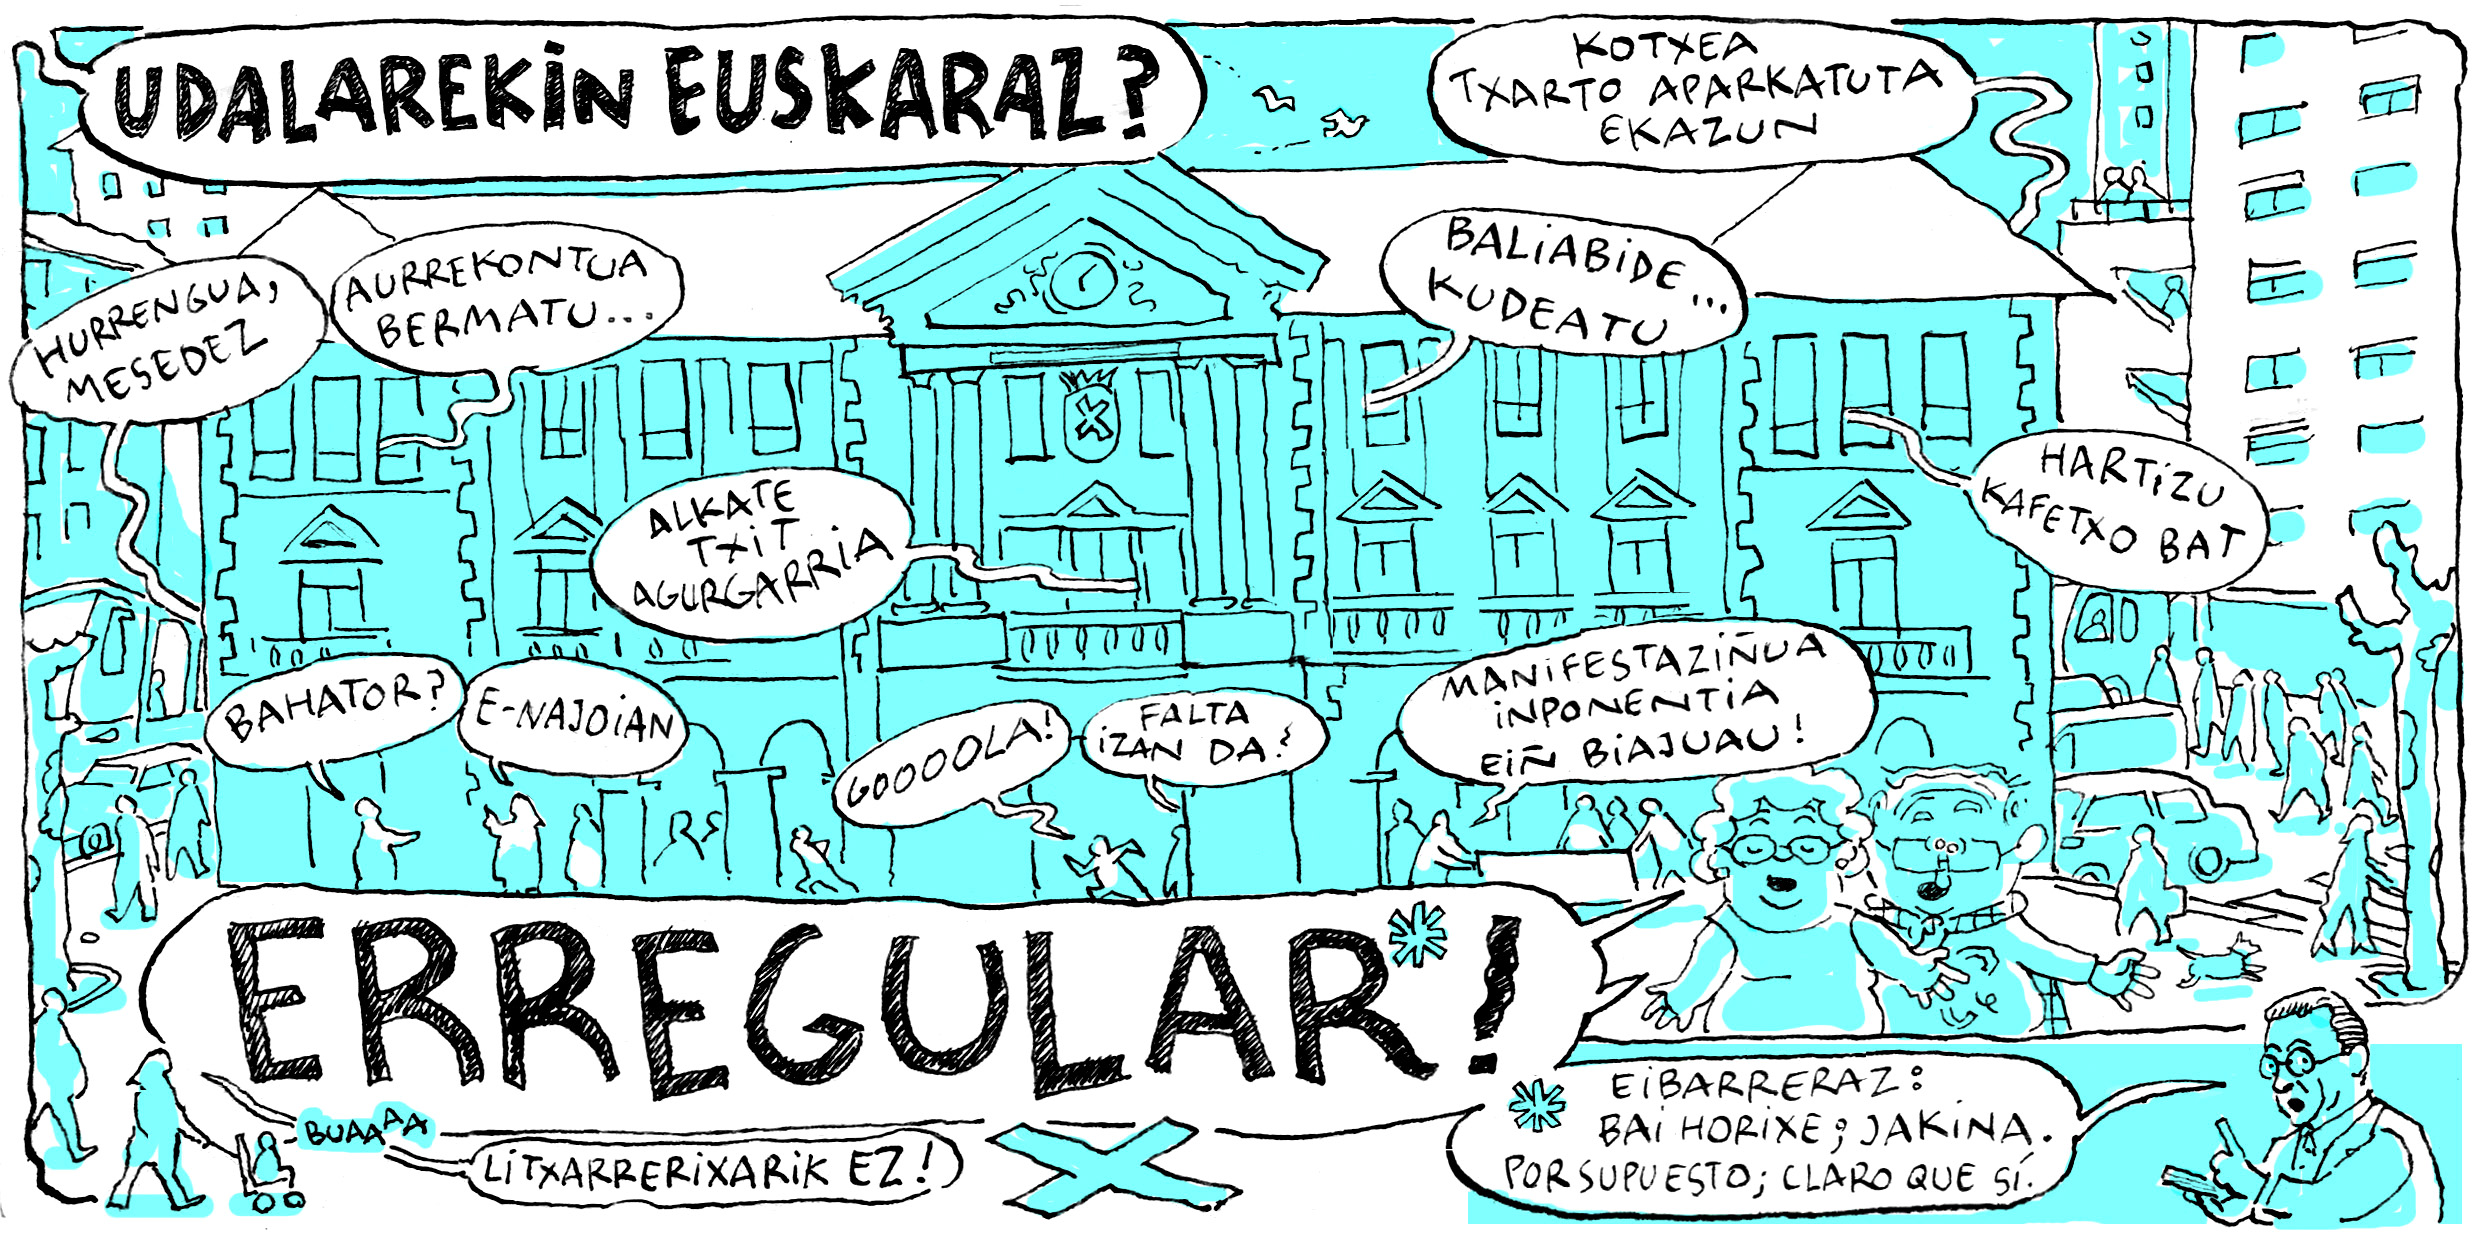 El Ayuntamiento de Eibar pone en marcha la campaña "¿En euskera con el Ayuntamiento de Eibar? ¡Erregular!"